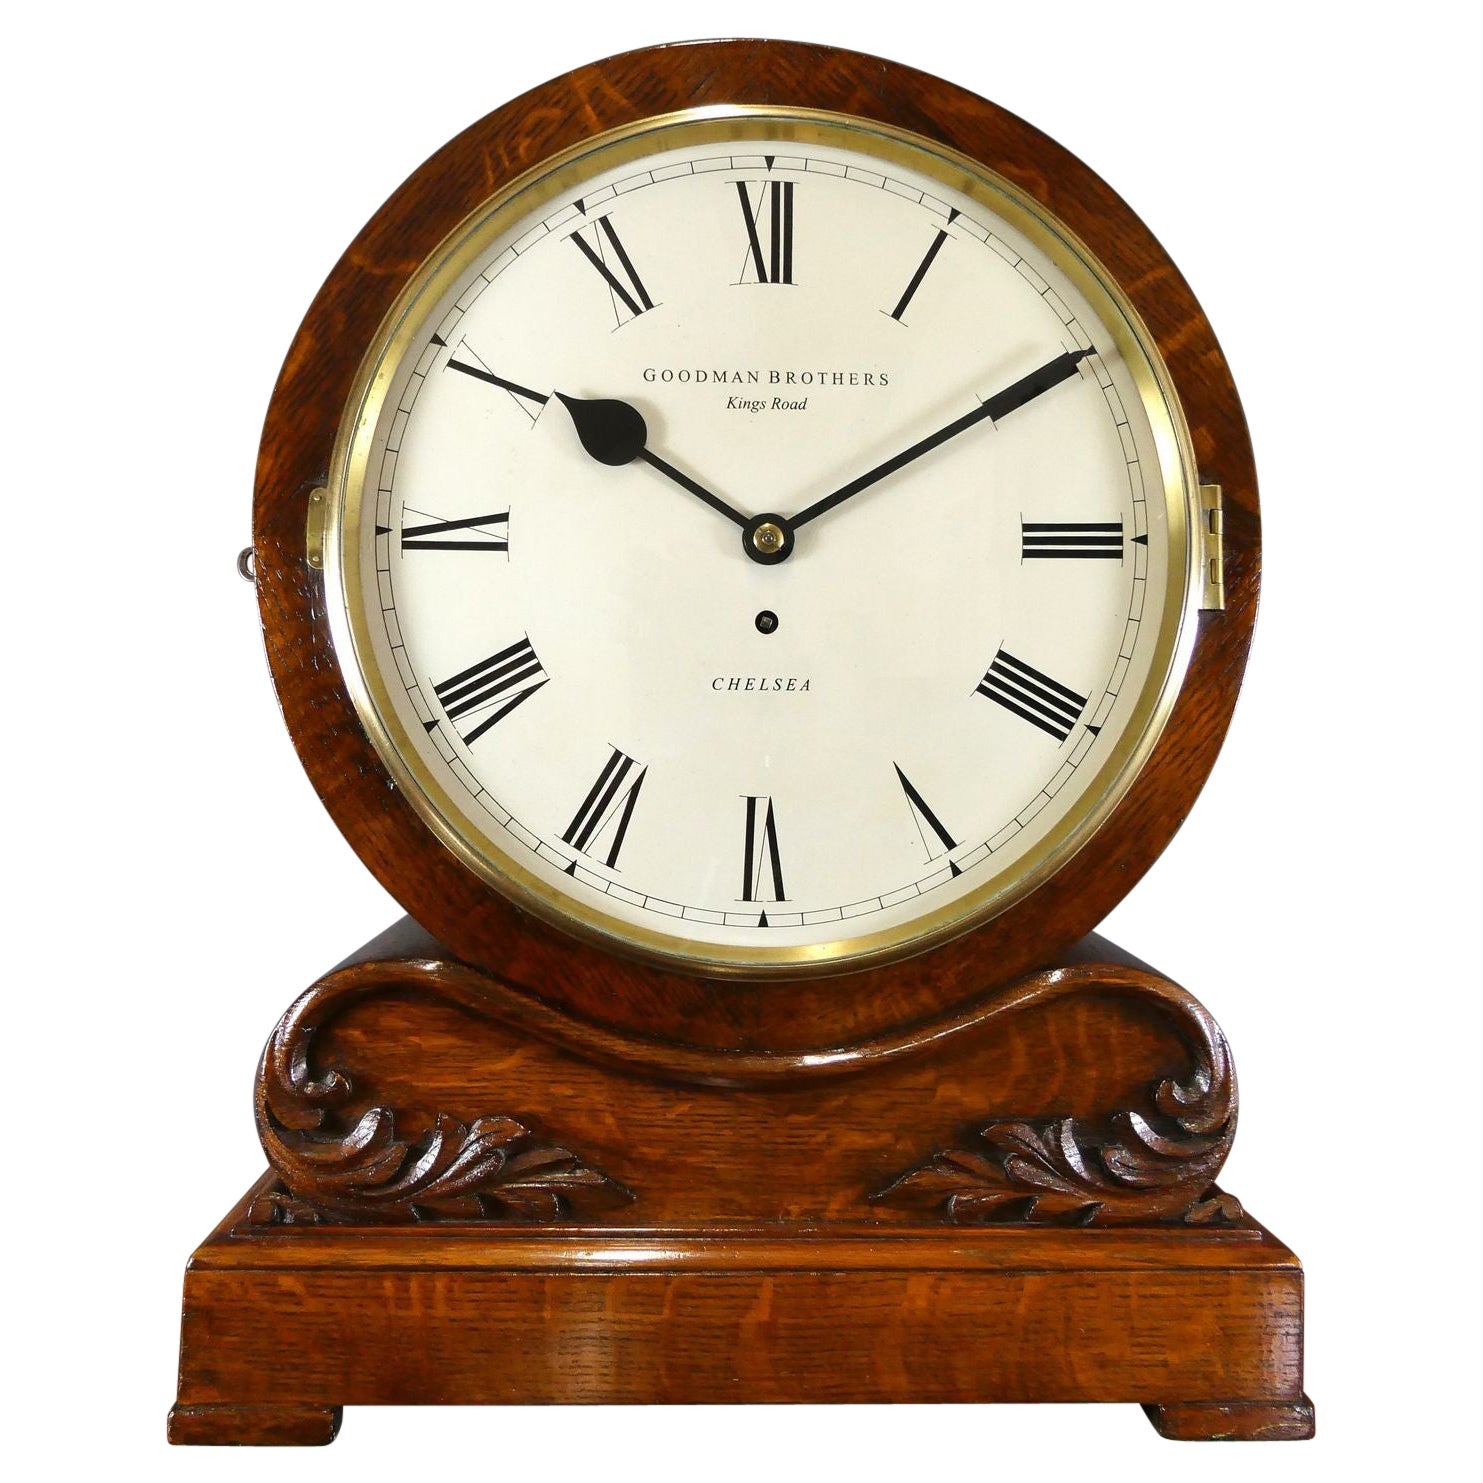 Oak Cased Drumhead Fusee Bracket Clock, Goodman Brothers, Kings Road, Chelsea